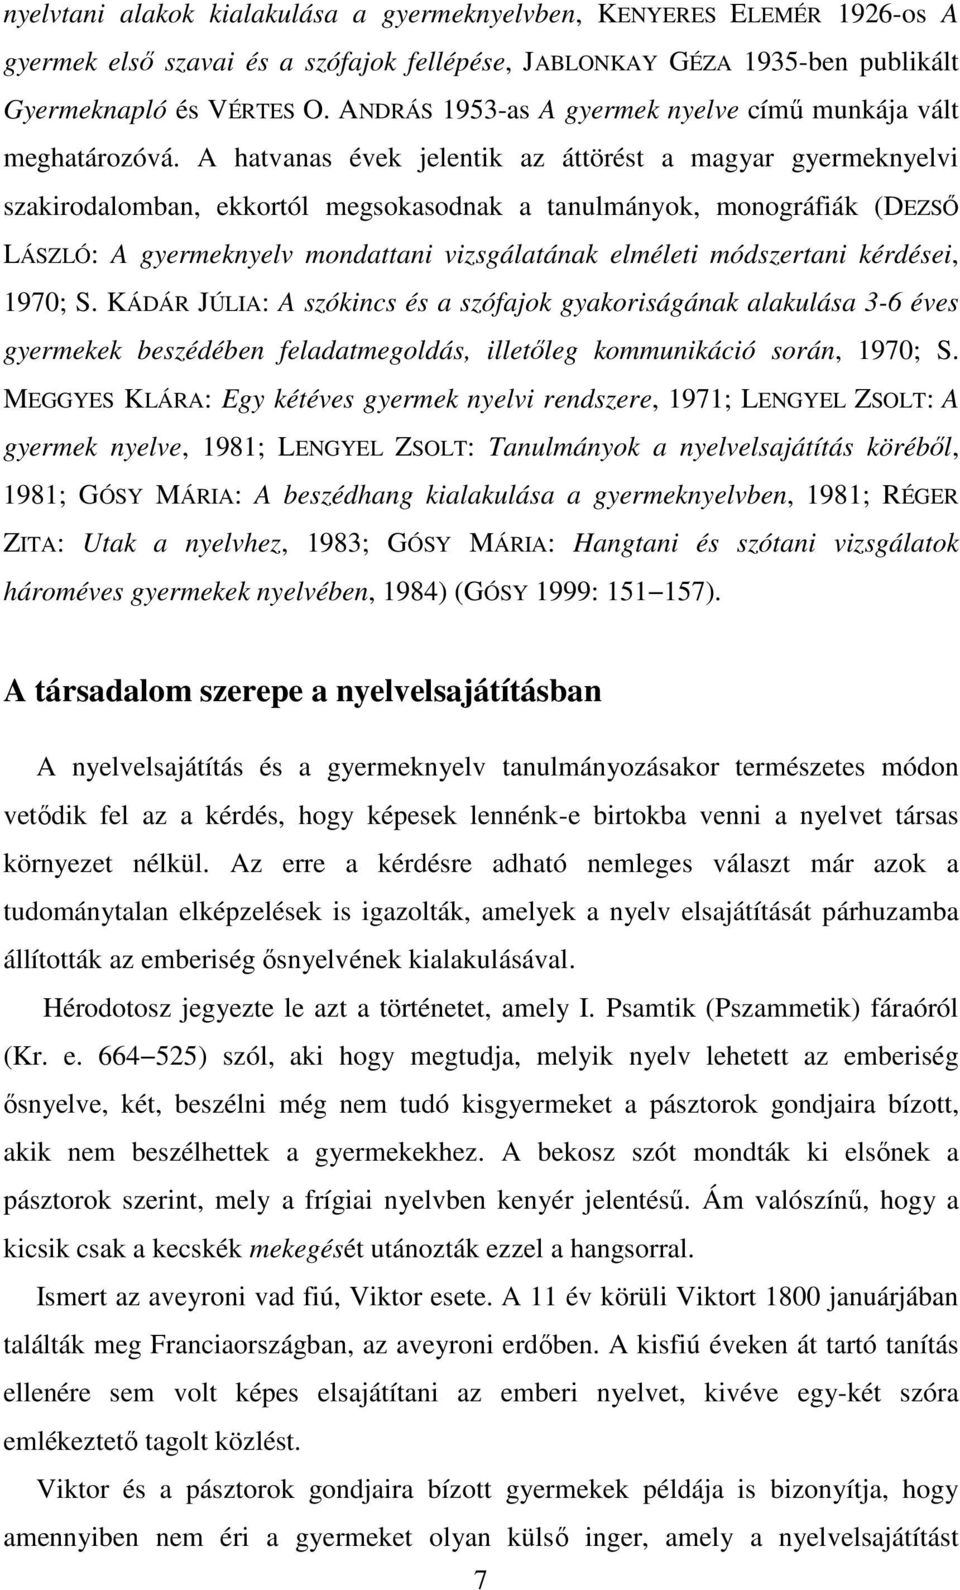 A hatvanas évek jelentik az áttörést a magyar gyermeknyelvi szakirodalomban, ekkortól megsokasodnak a tanulmányok, monográfiák (DEZSŐ LÁSZLÓ: A gyermeknyelv mondattani vizsgálatának elméleti